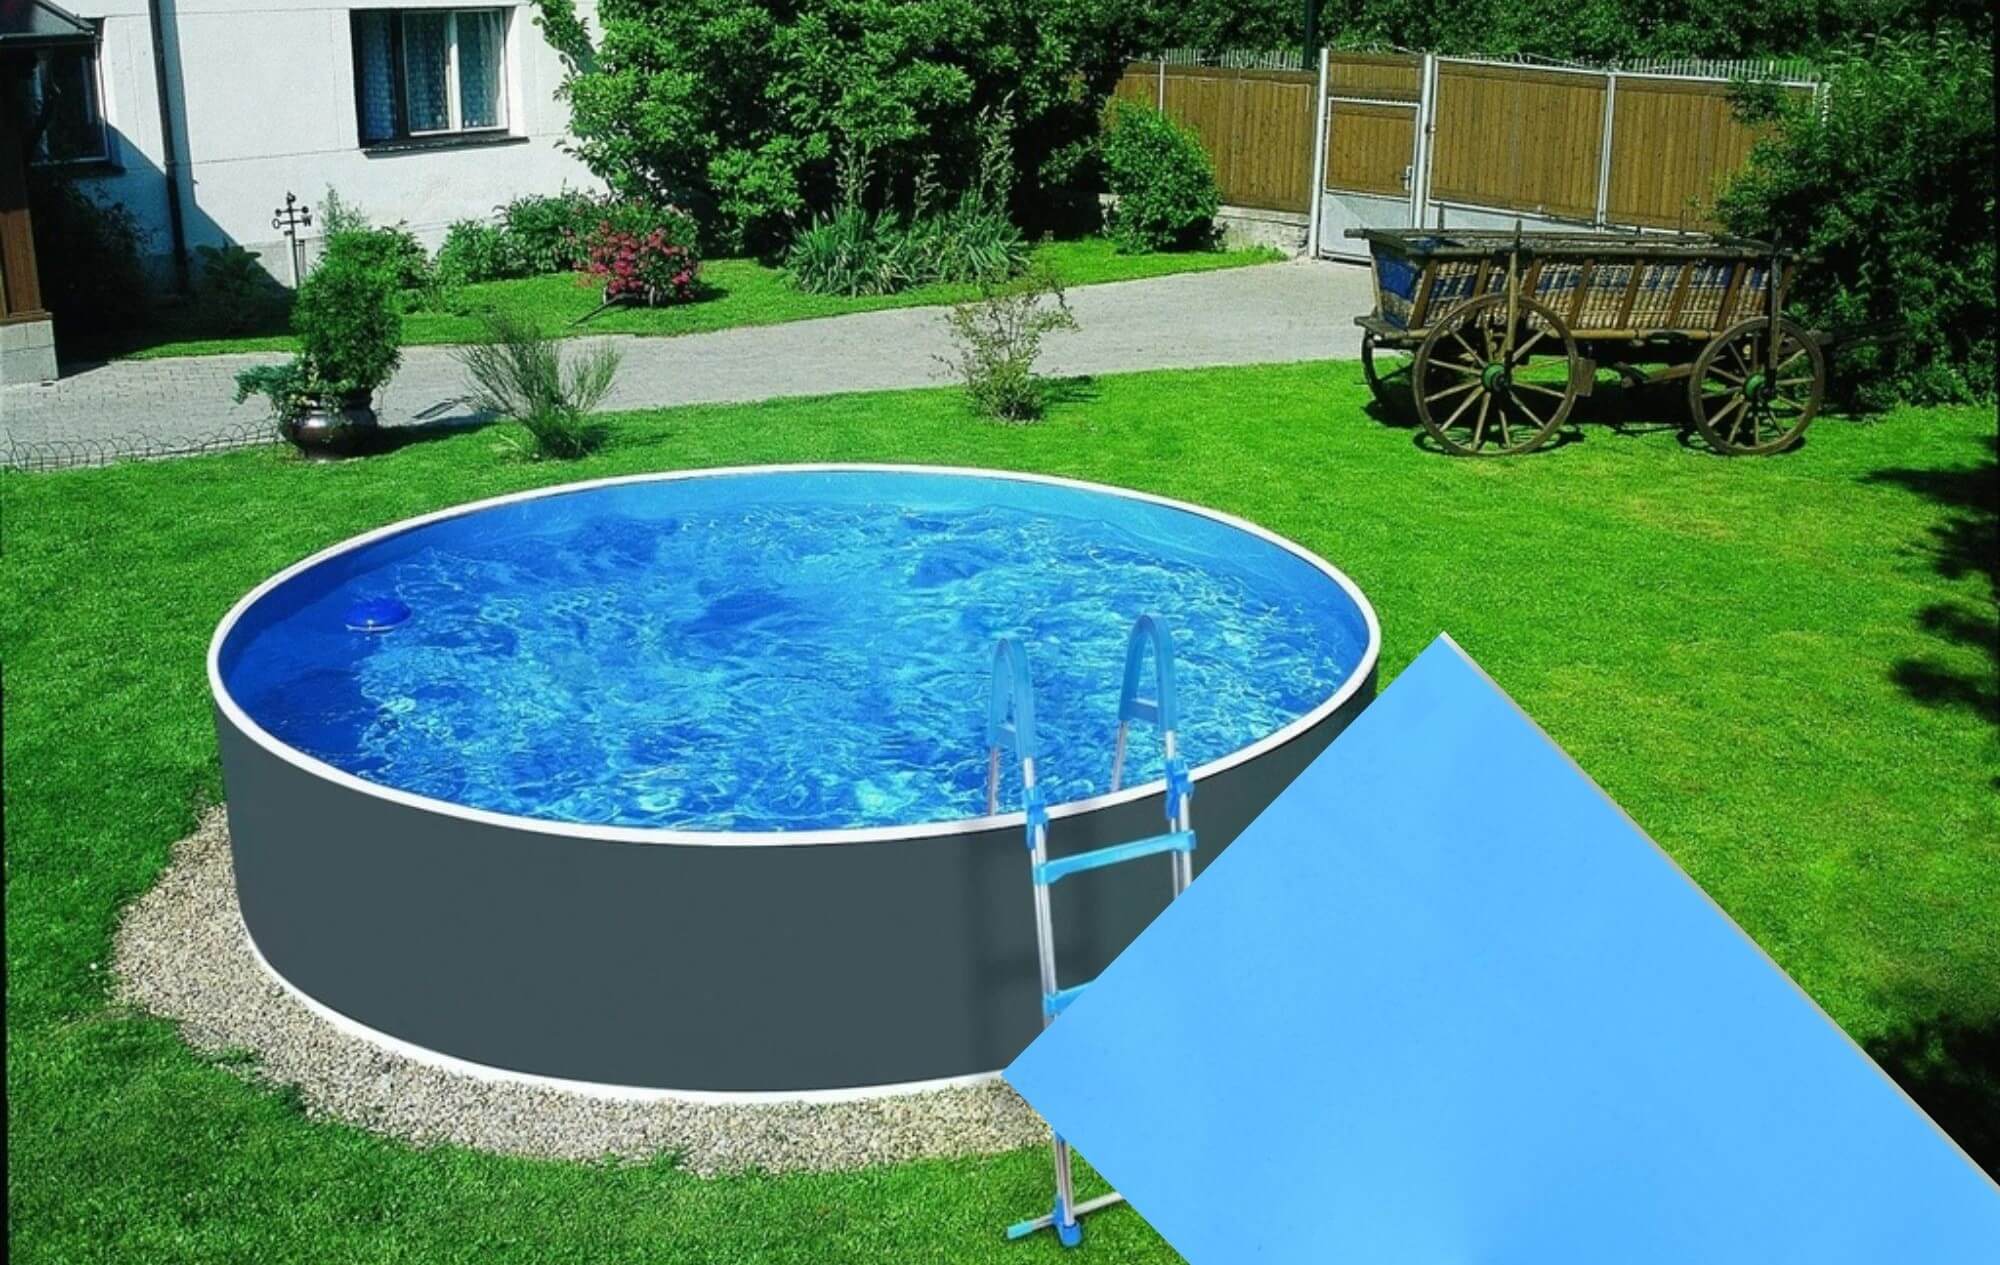 Planet Pool Náhradní bazénová fólie Blue pro bazén průměr 3,6 m x 1,2 m